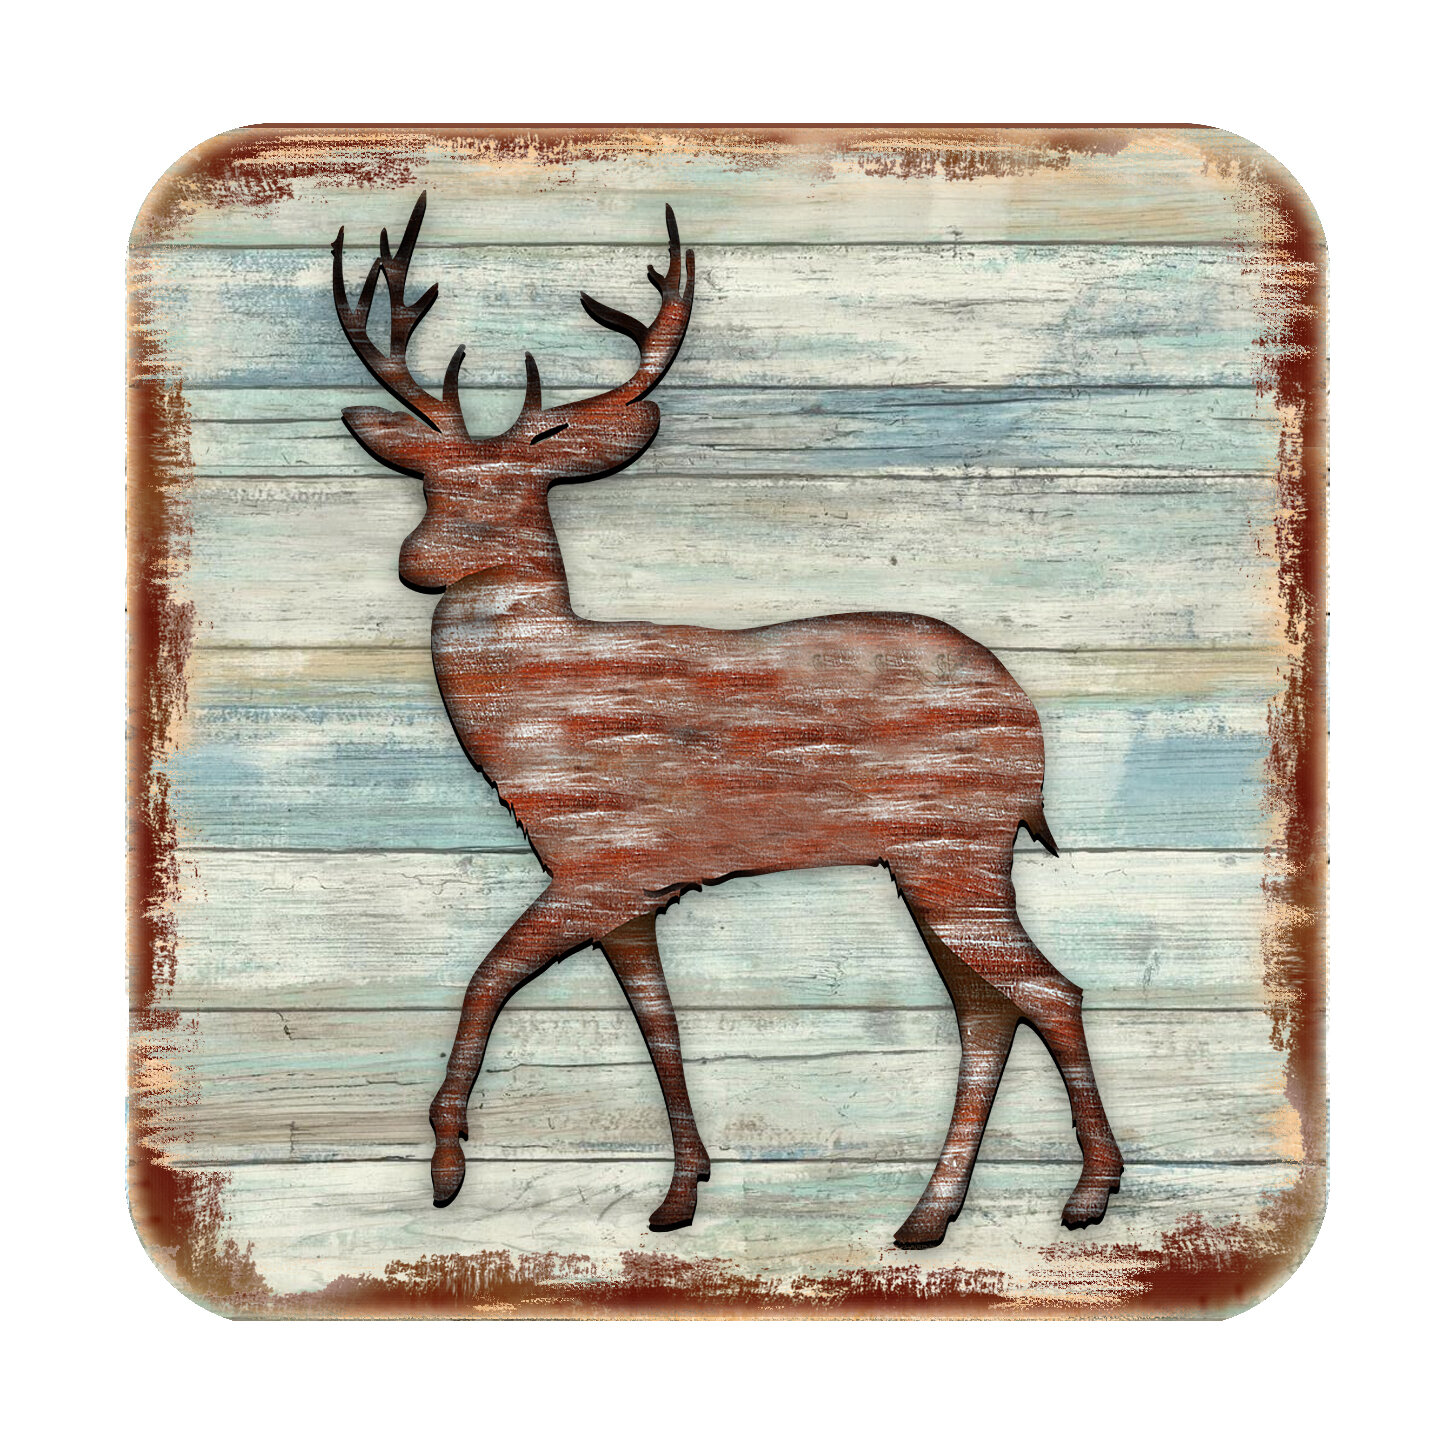 Deer Coasters 